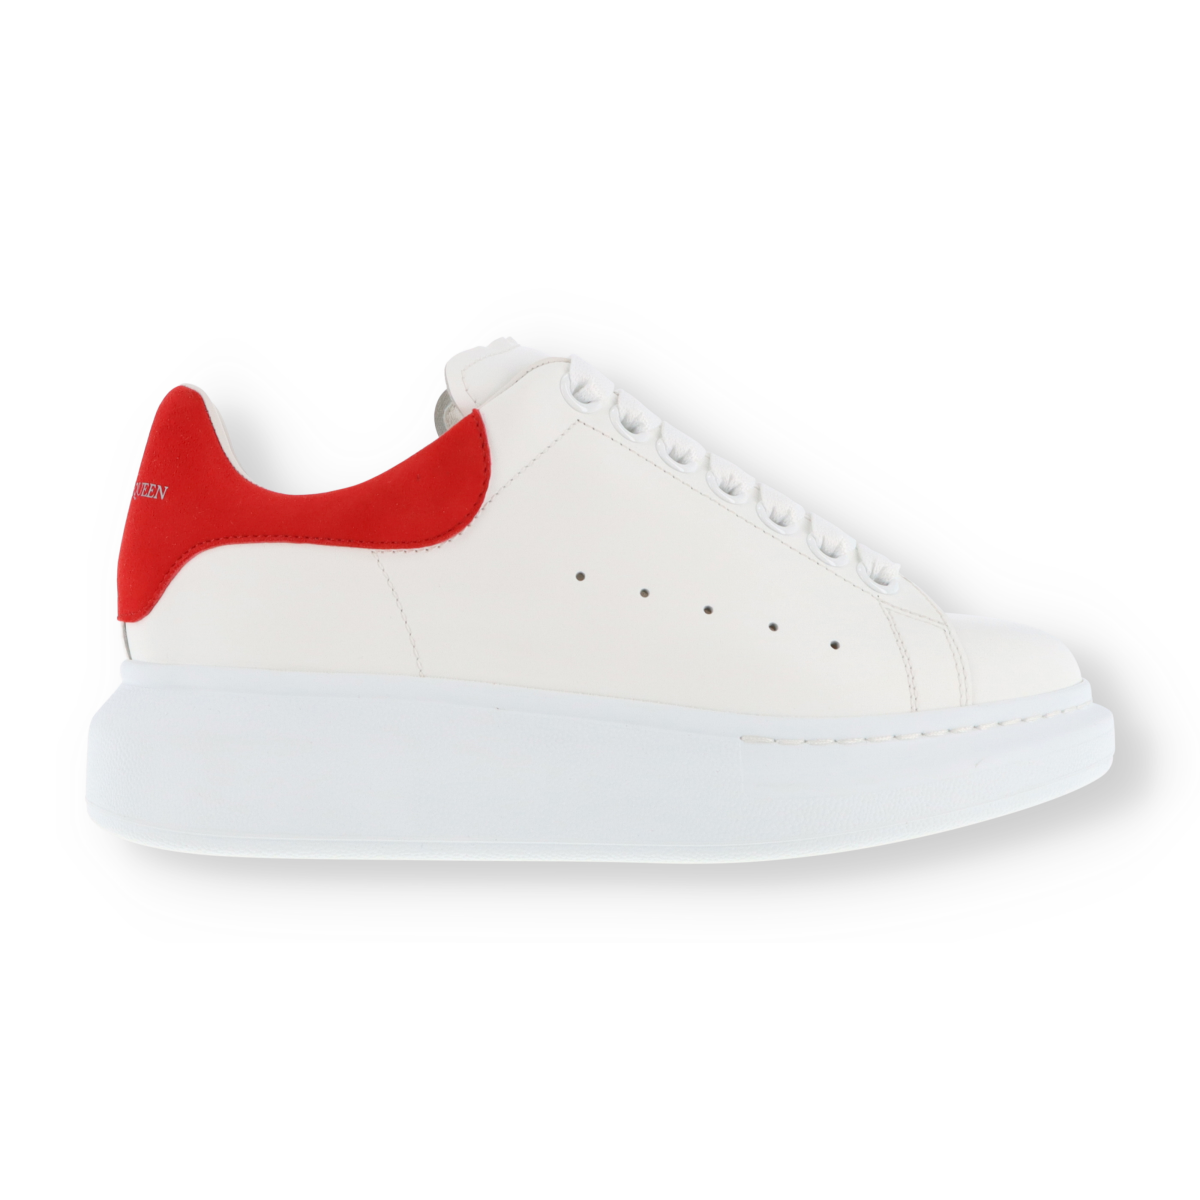 Alexander McQueen Larry Sneakers